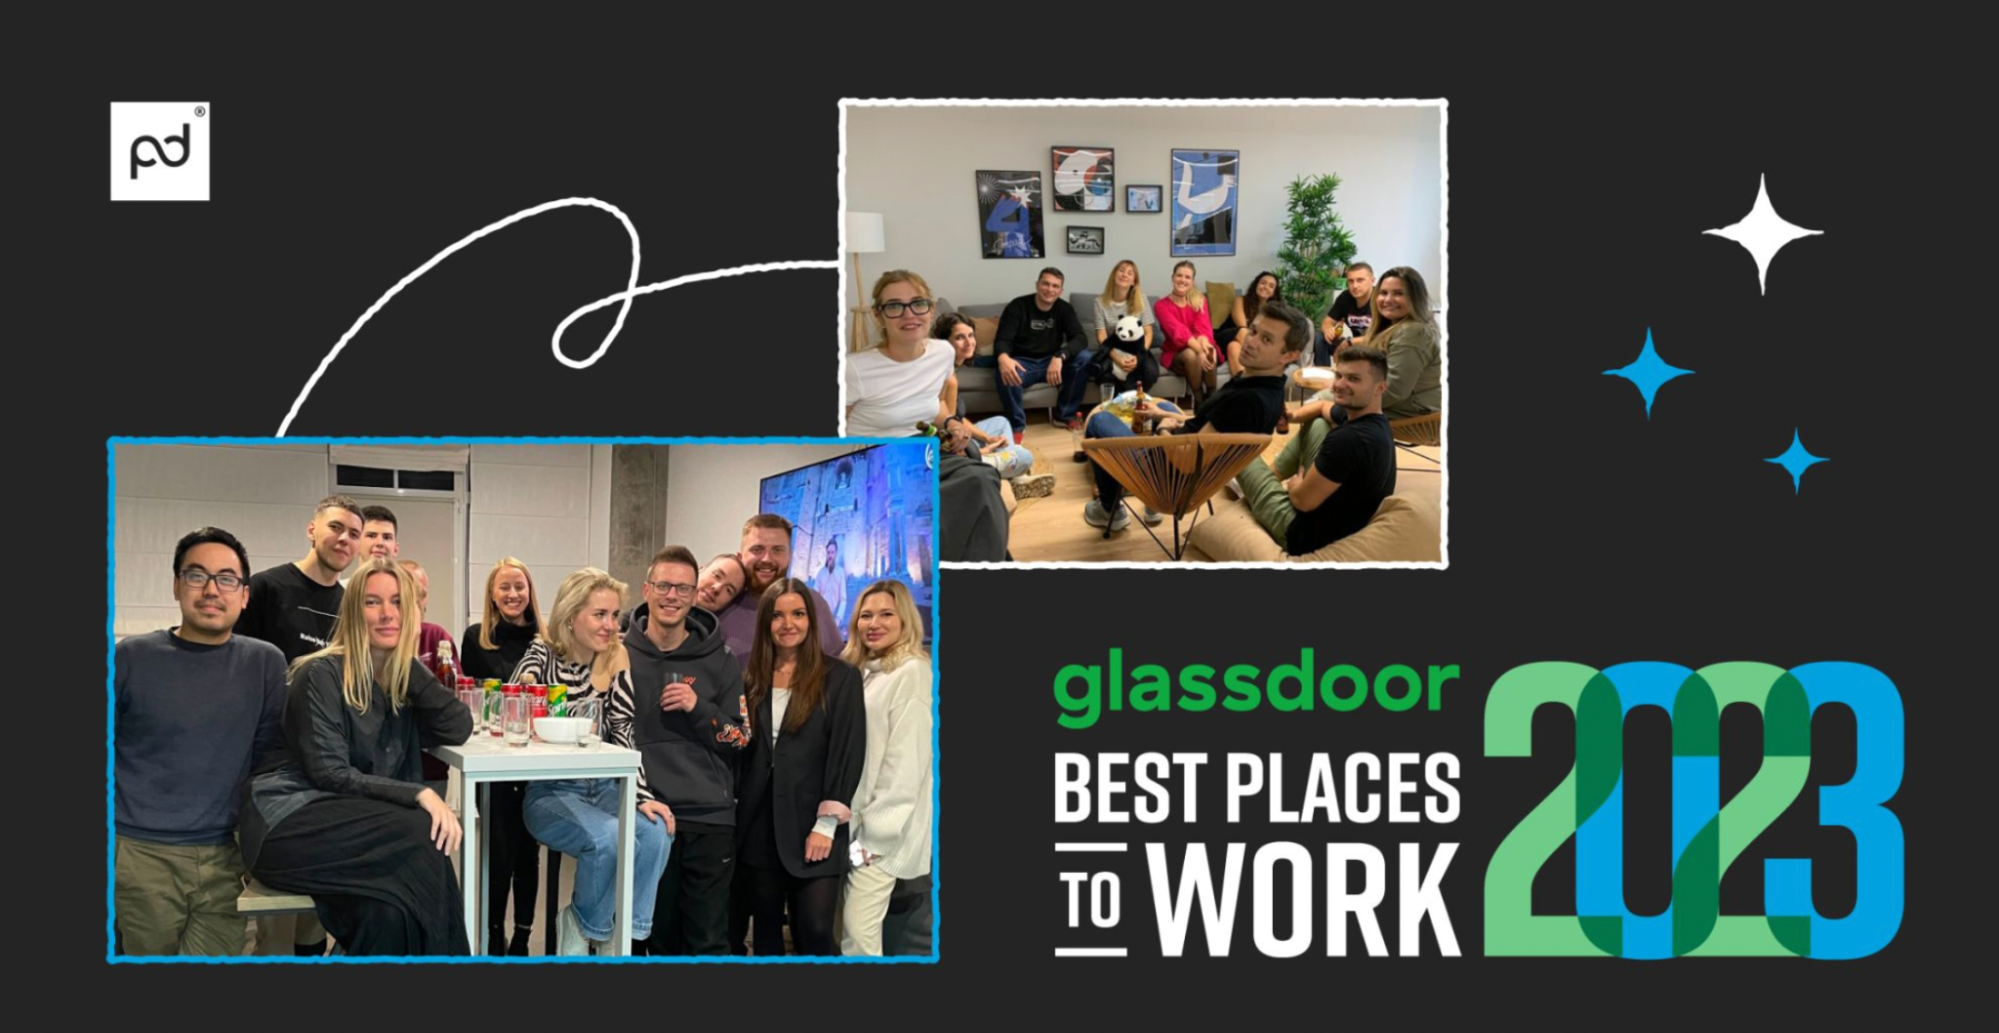 glassdoor: Best Places to Work